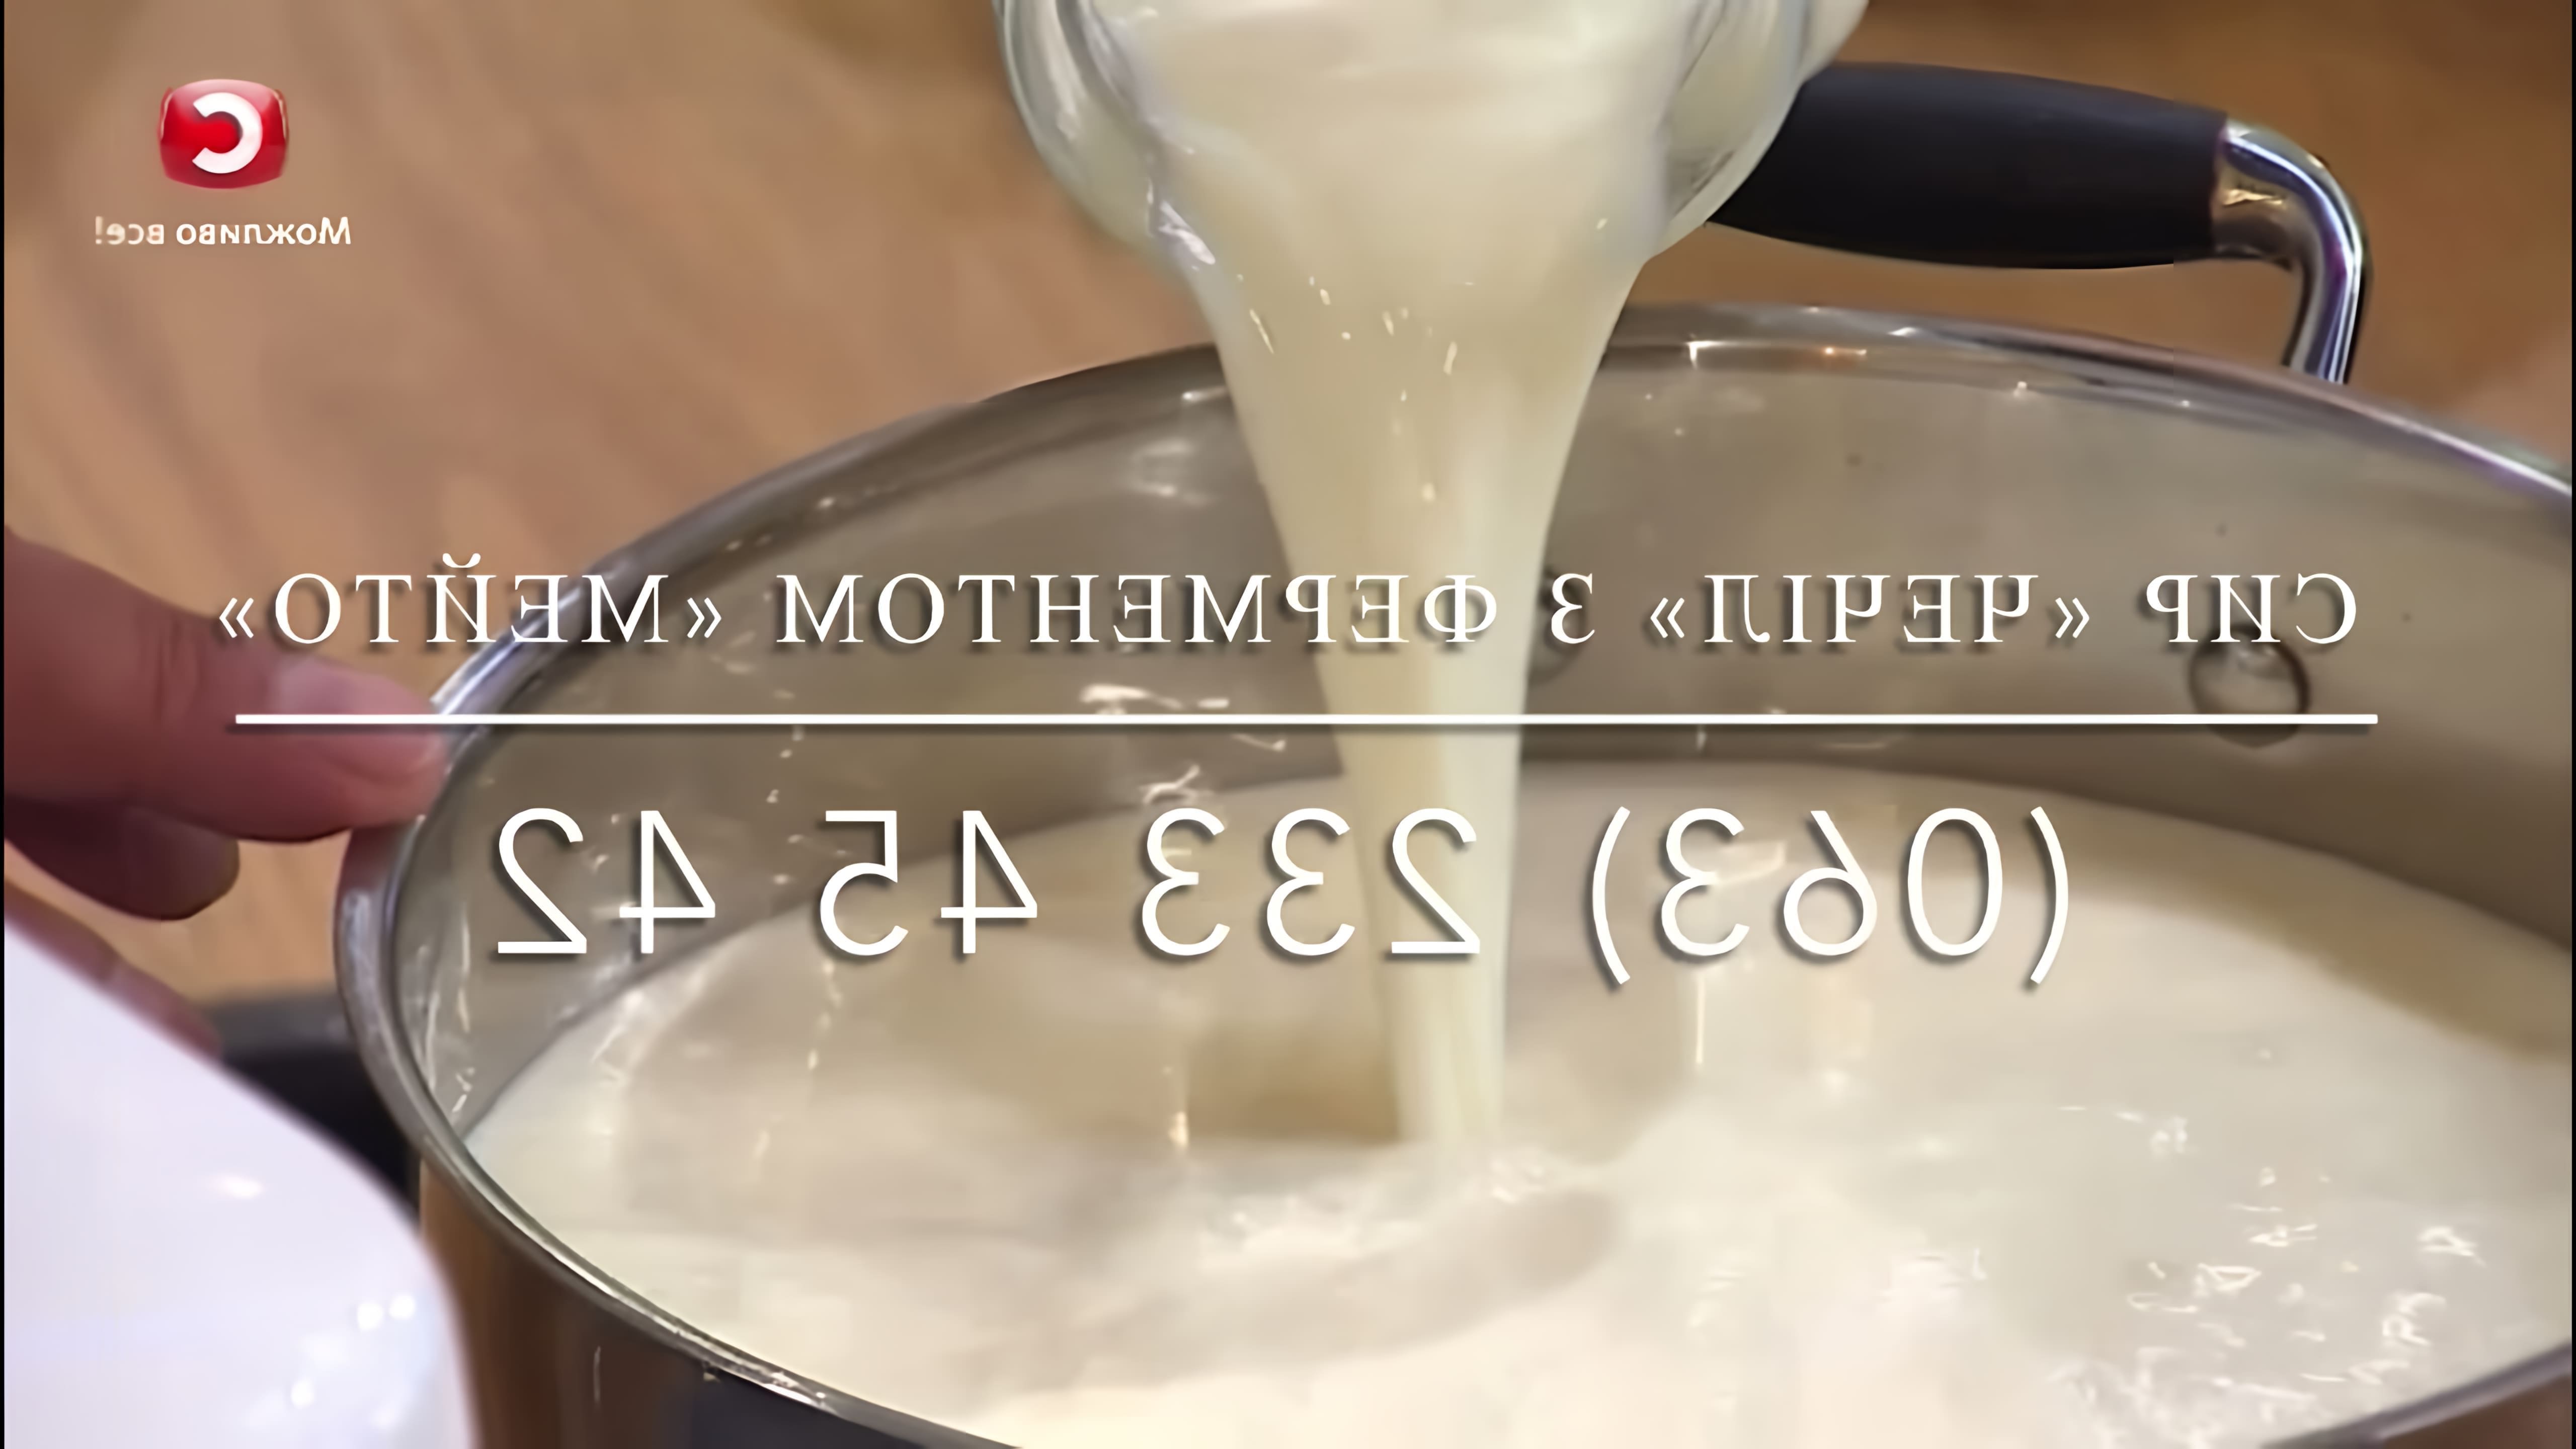 Сыр Чечил (Косичка) с ферментом Мейто - это видео-ролик, который демонстрирует процесс приготовления этого популярного сыра